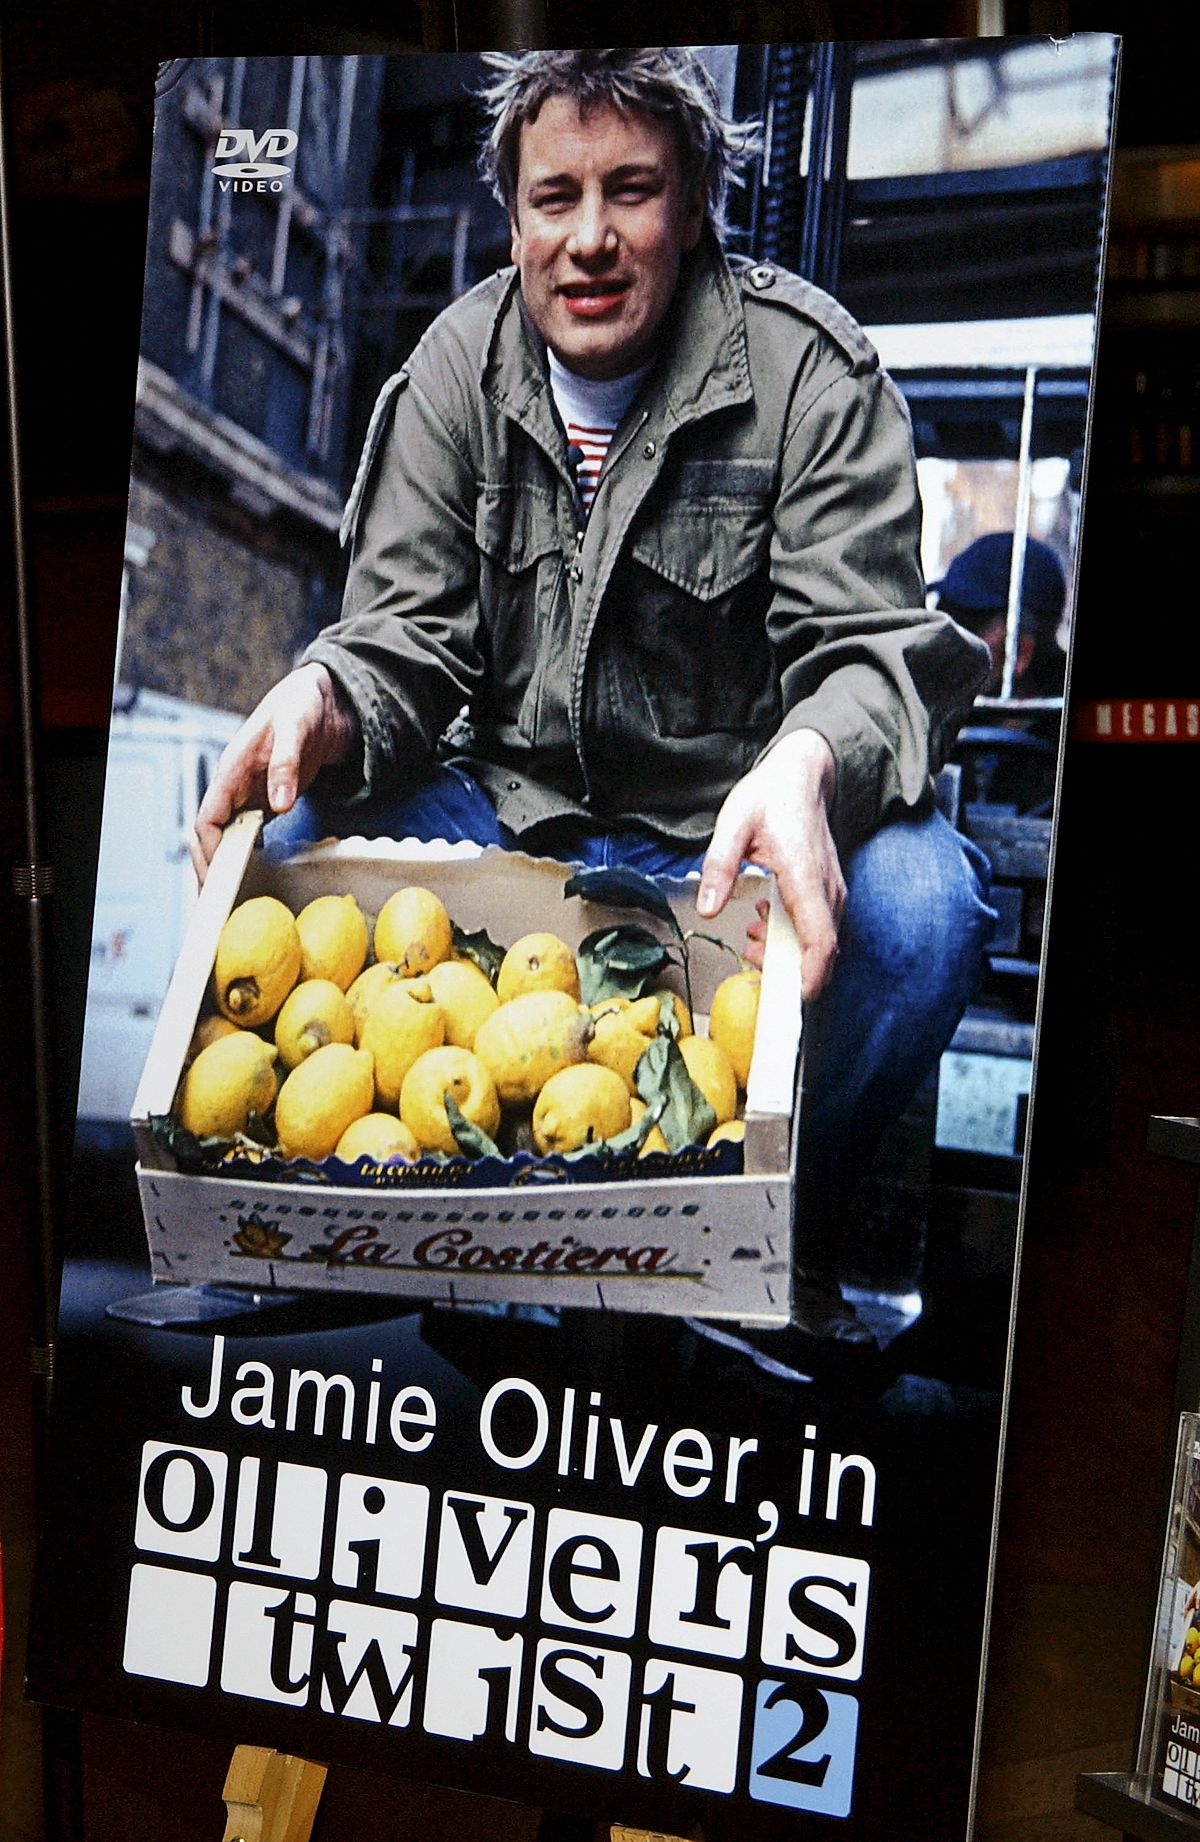 Презентация DVD диска с видеорецептами «Olivers Twist 2» знаменитого шеф-повара Джейми Оливера